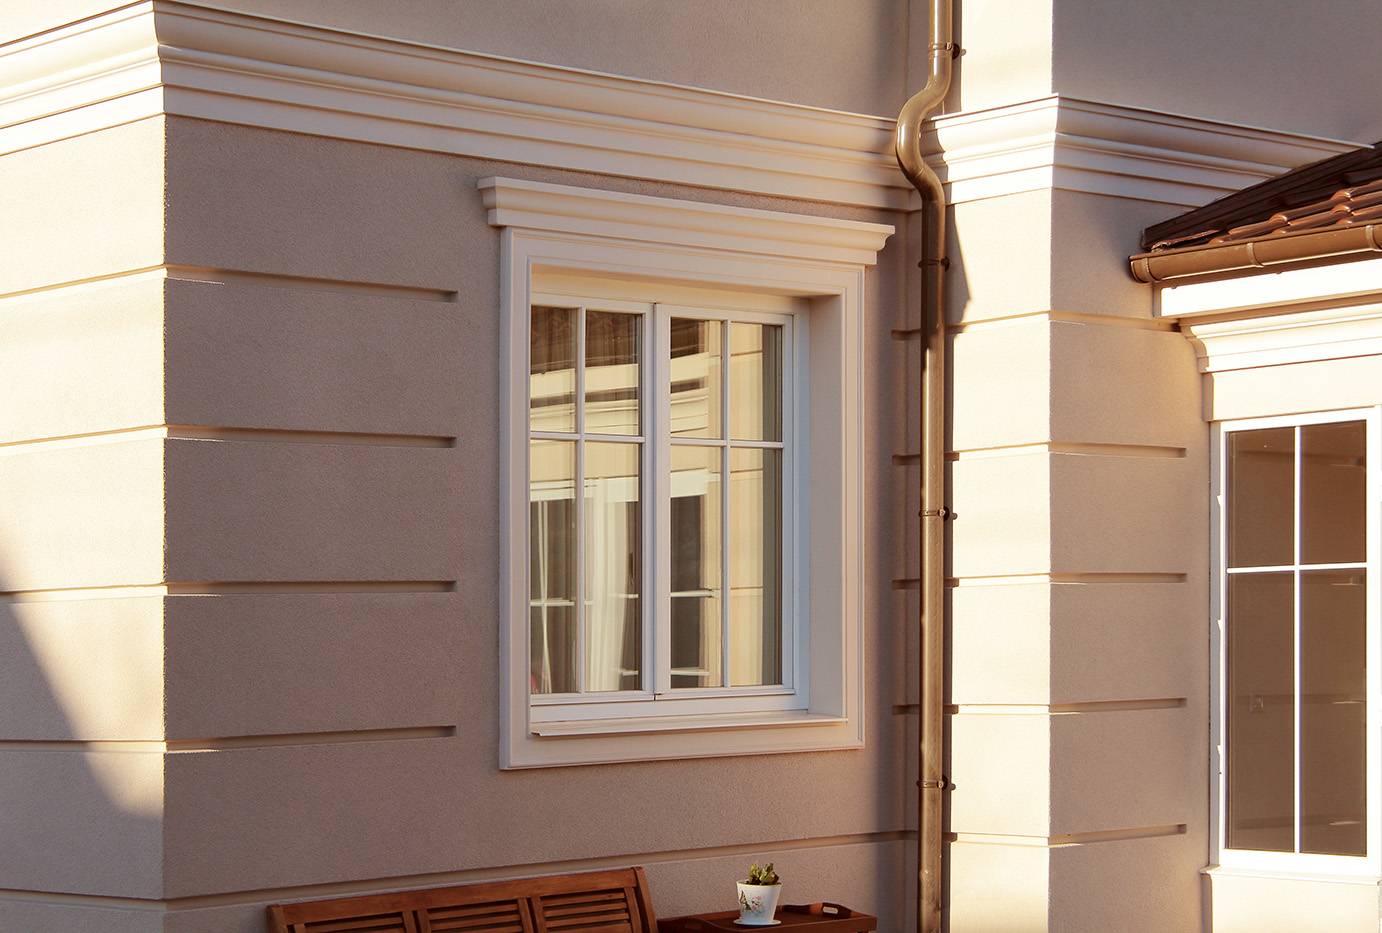 Резные окна с наличниками с узорами в деревянном доме, варианты красивого декора